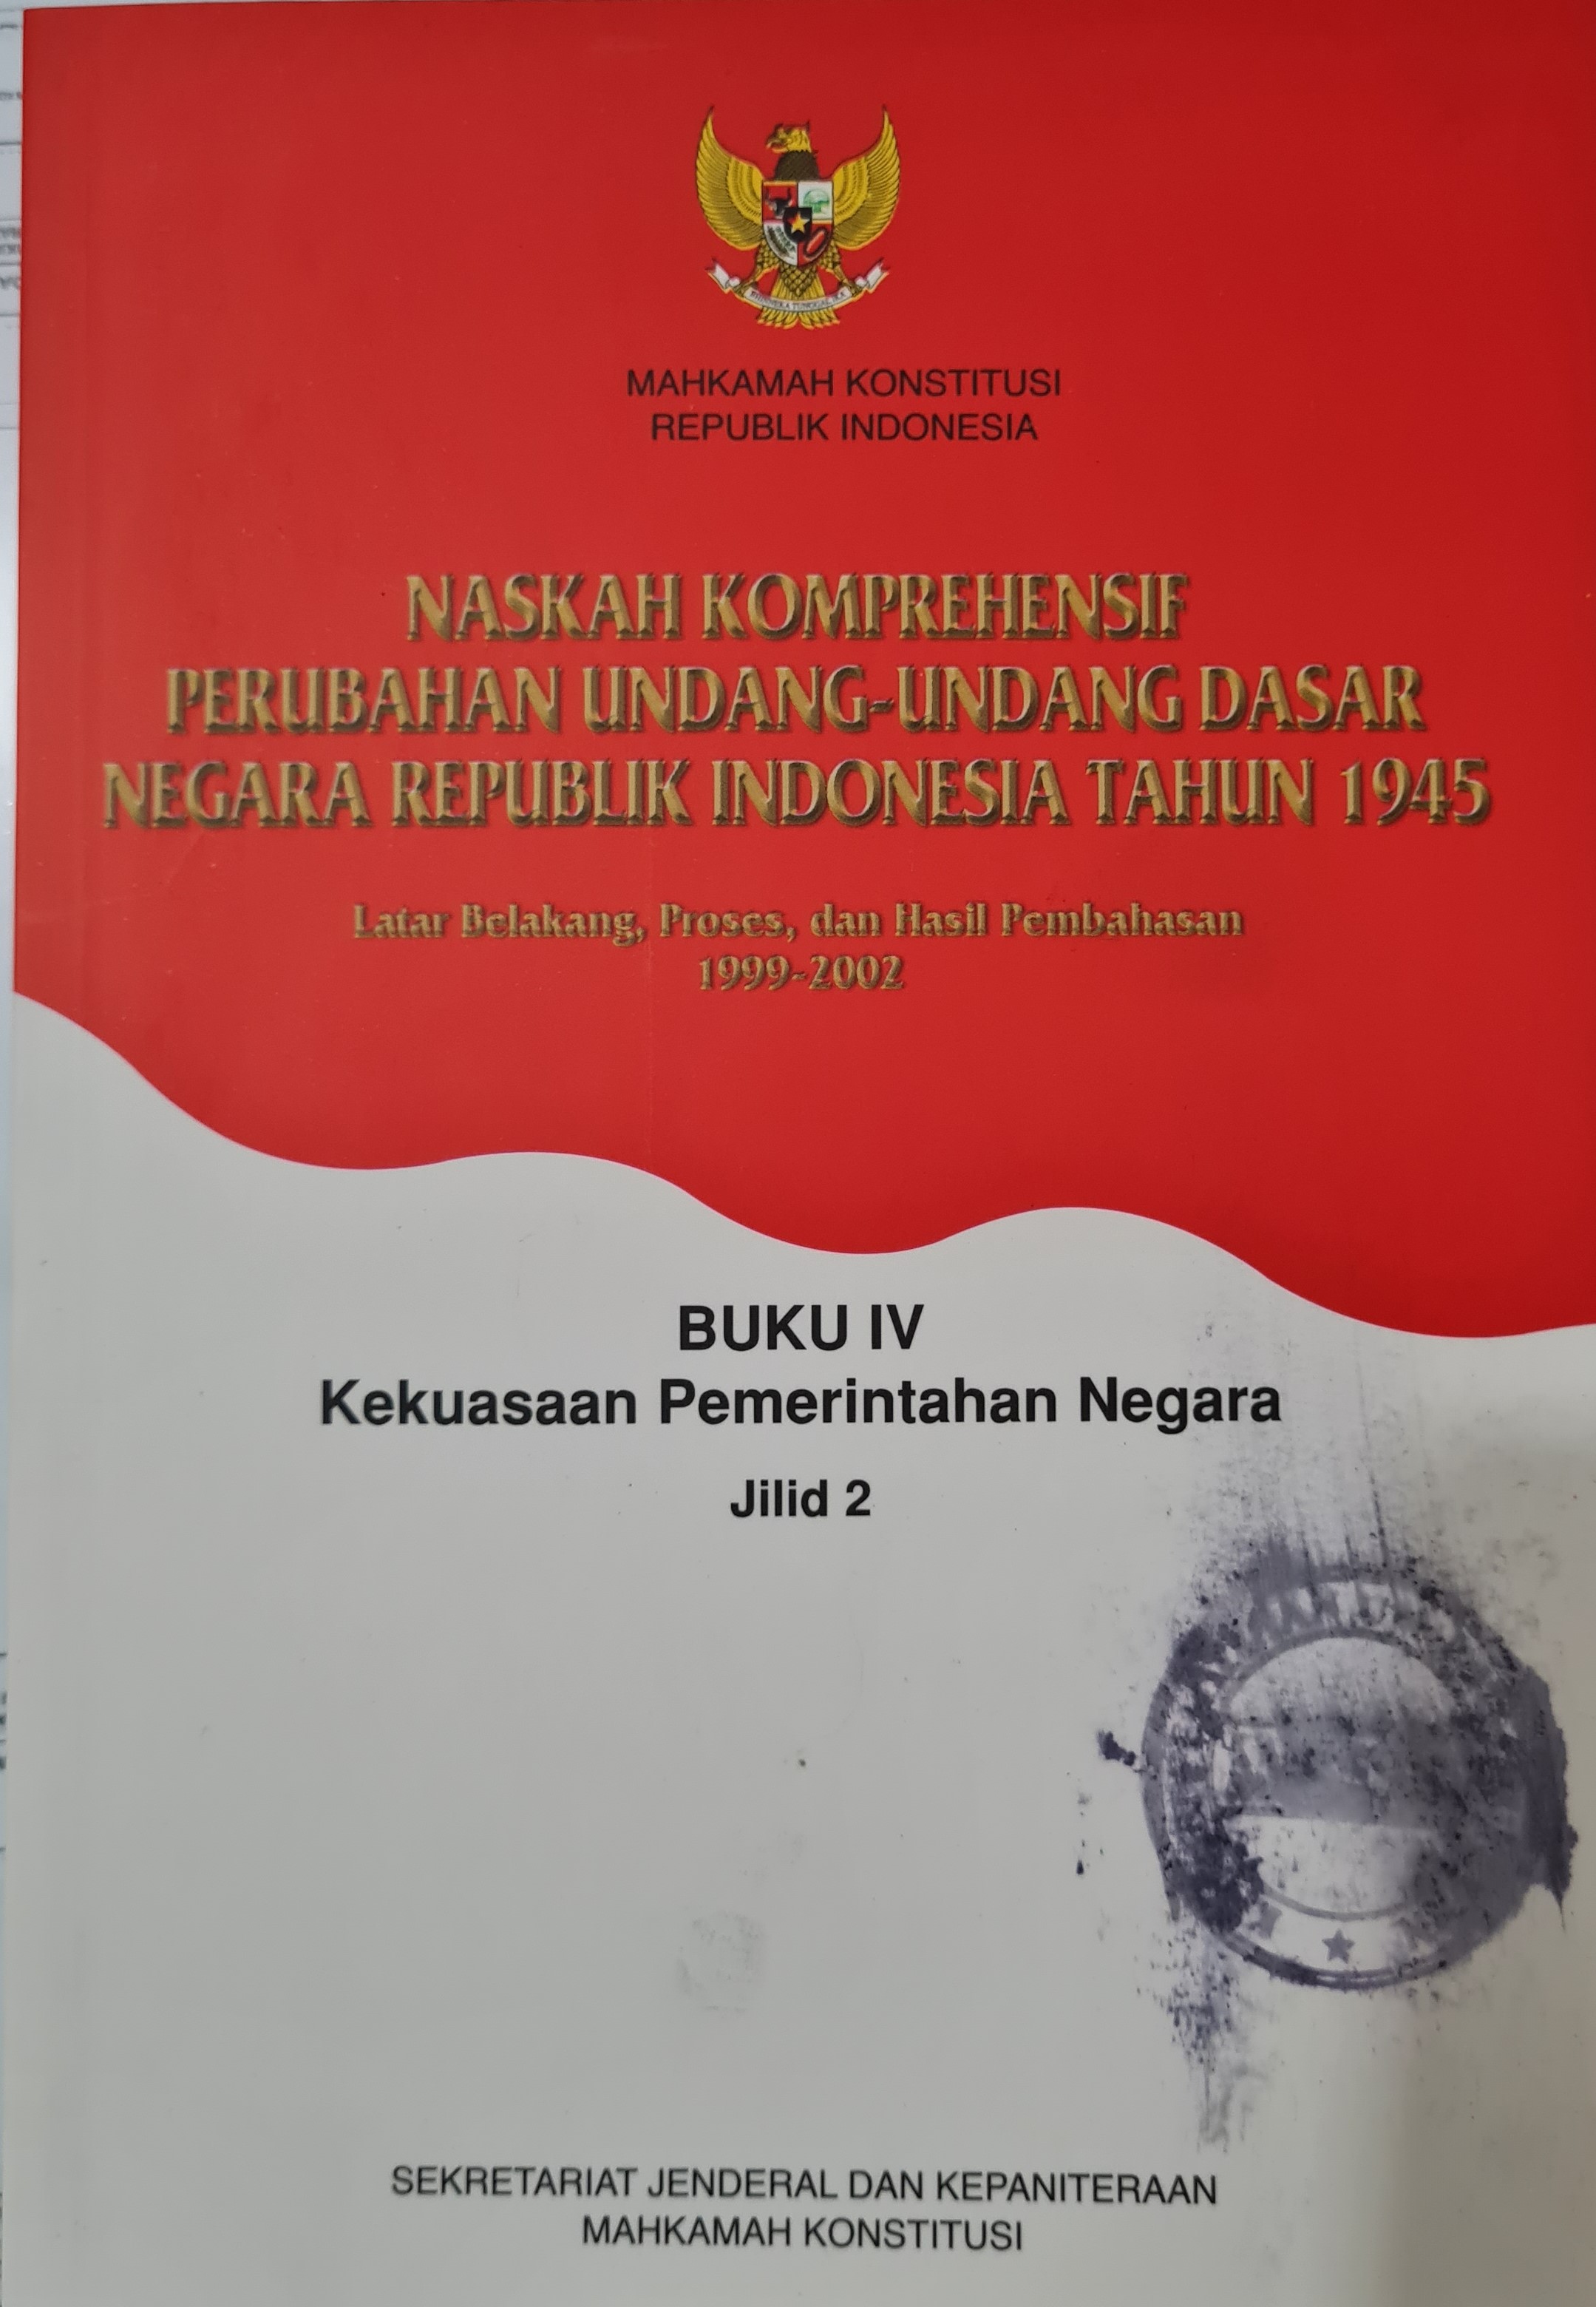 Naskah Komprehensif Perubahan Undang-Undang Dasar Negara Republik Indonesia Tahun 1945 Buku IV Kekuasaan Pemerintahan Negara Jilid 2